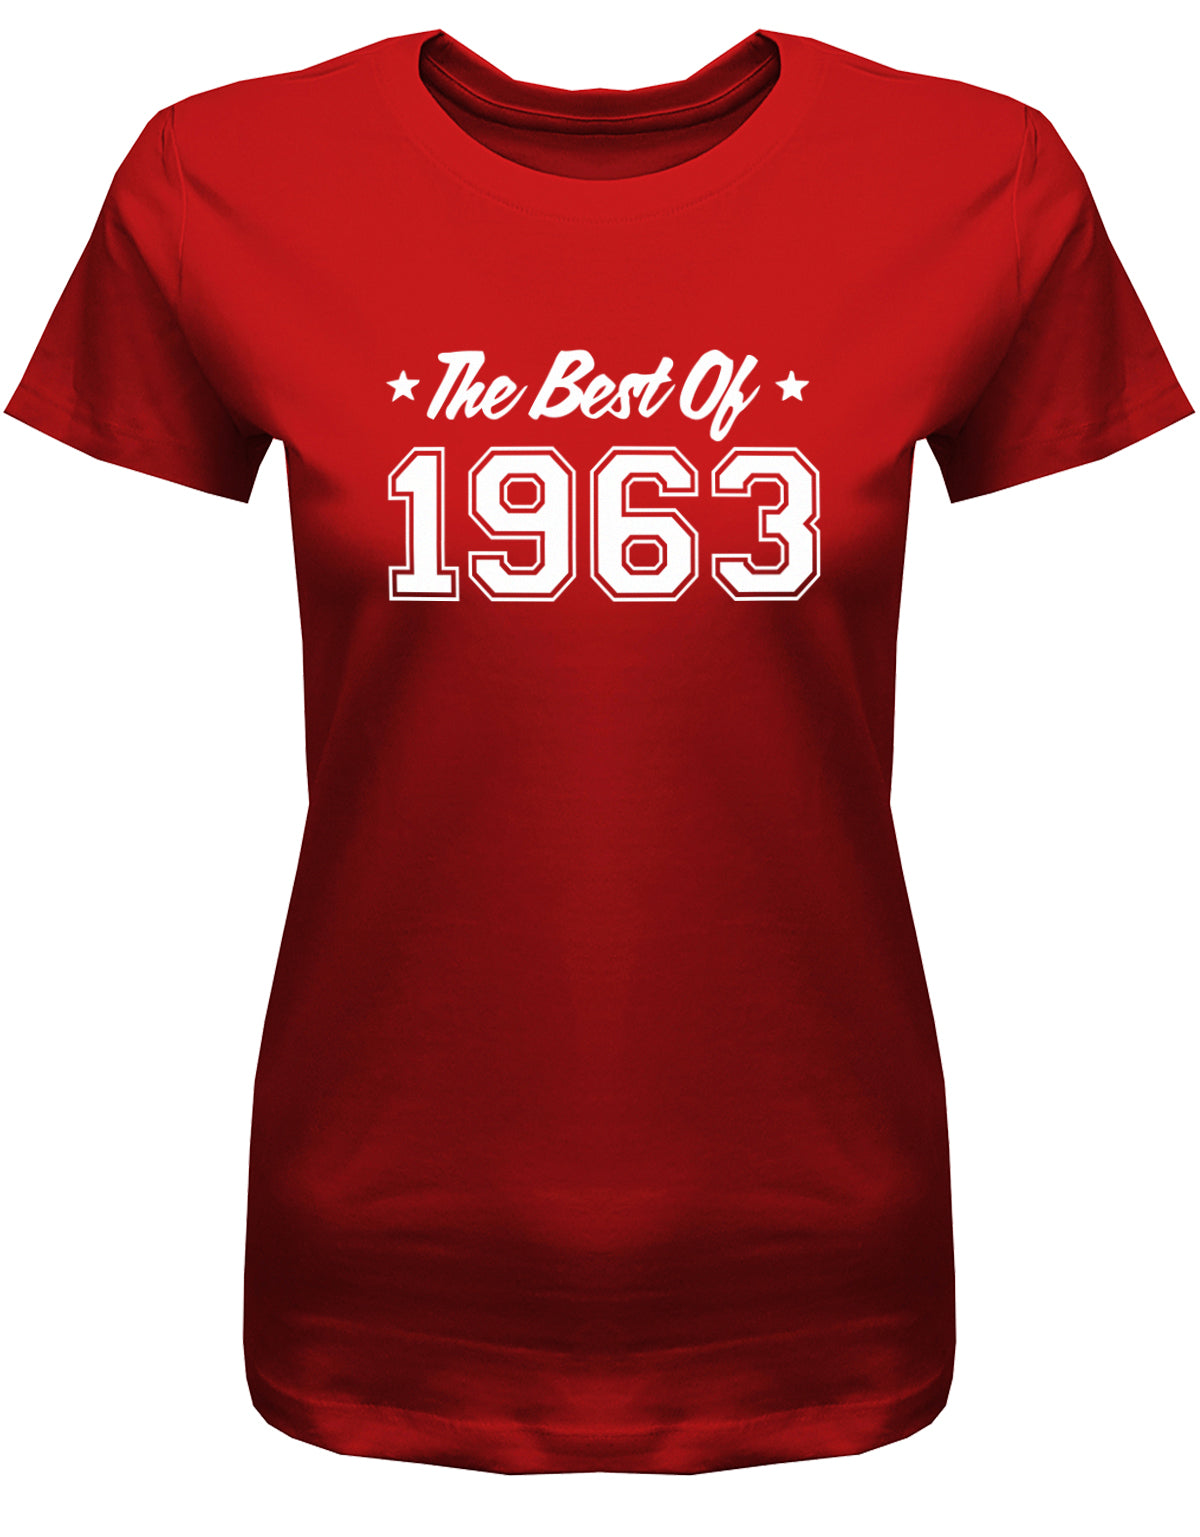 The Best of 1963 - Jahrgang 1963 Geschenk Frauen Shirt